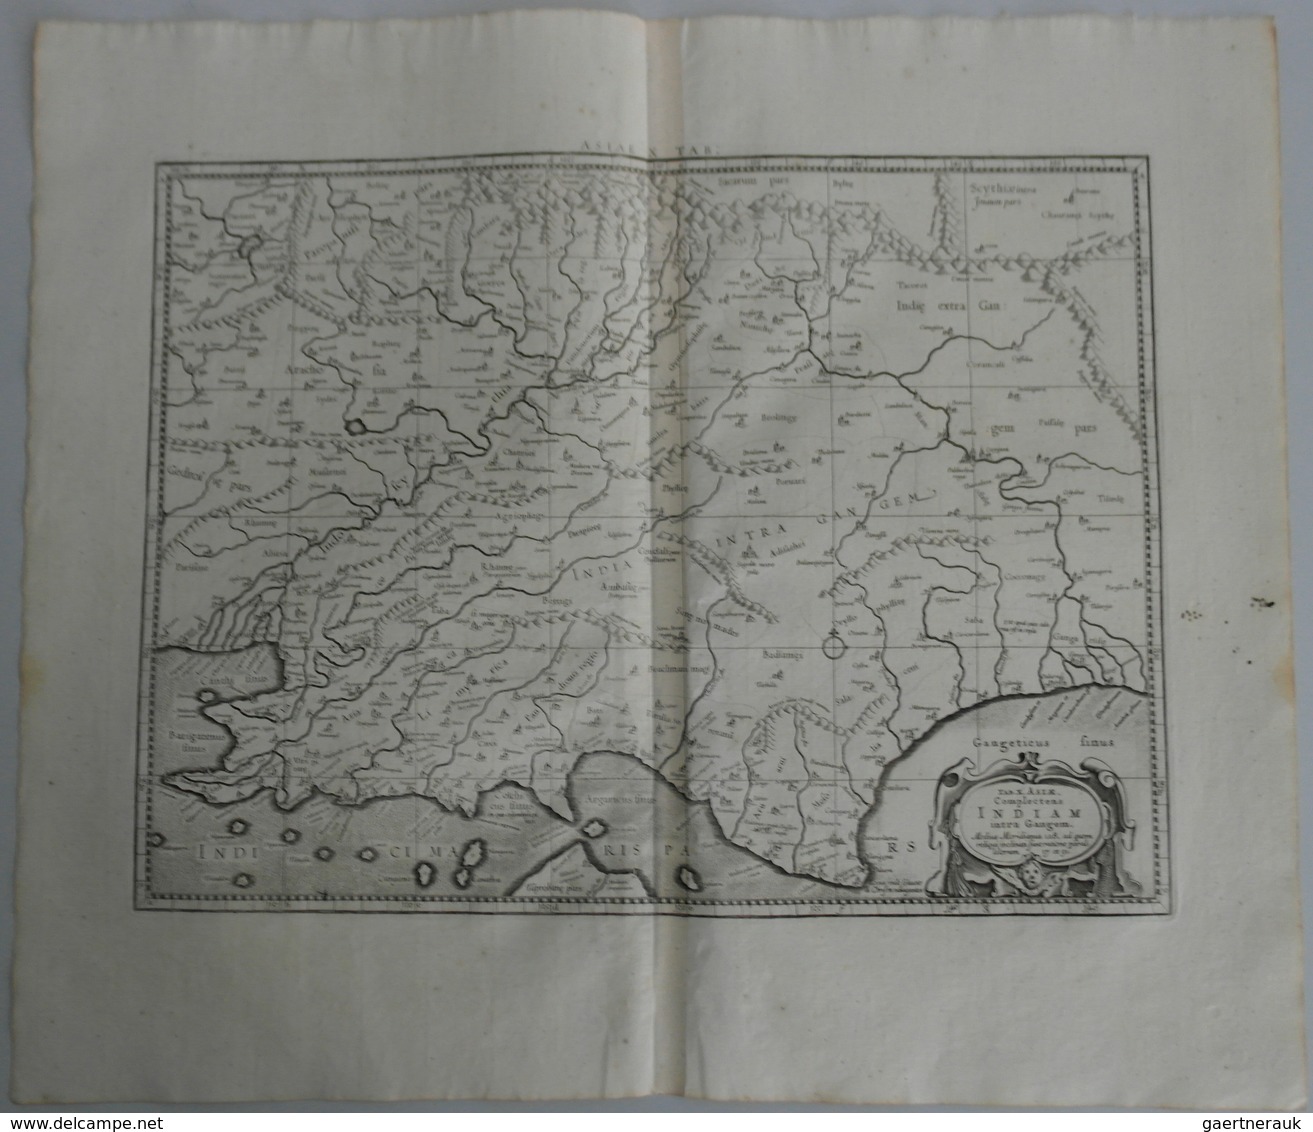 Landkarten Und Stiche: 1695 (ca.): "Tab.XI Asiae Comprehendens Indiam Intra Gangem". Beautiful Fresh - Géographie